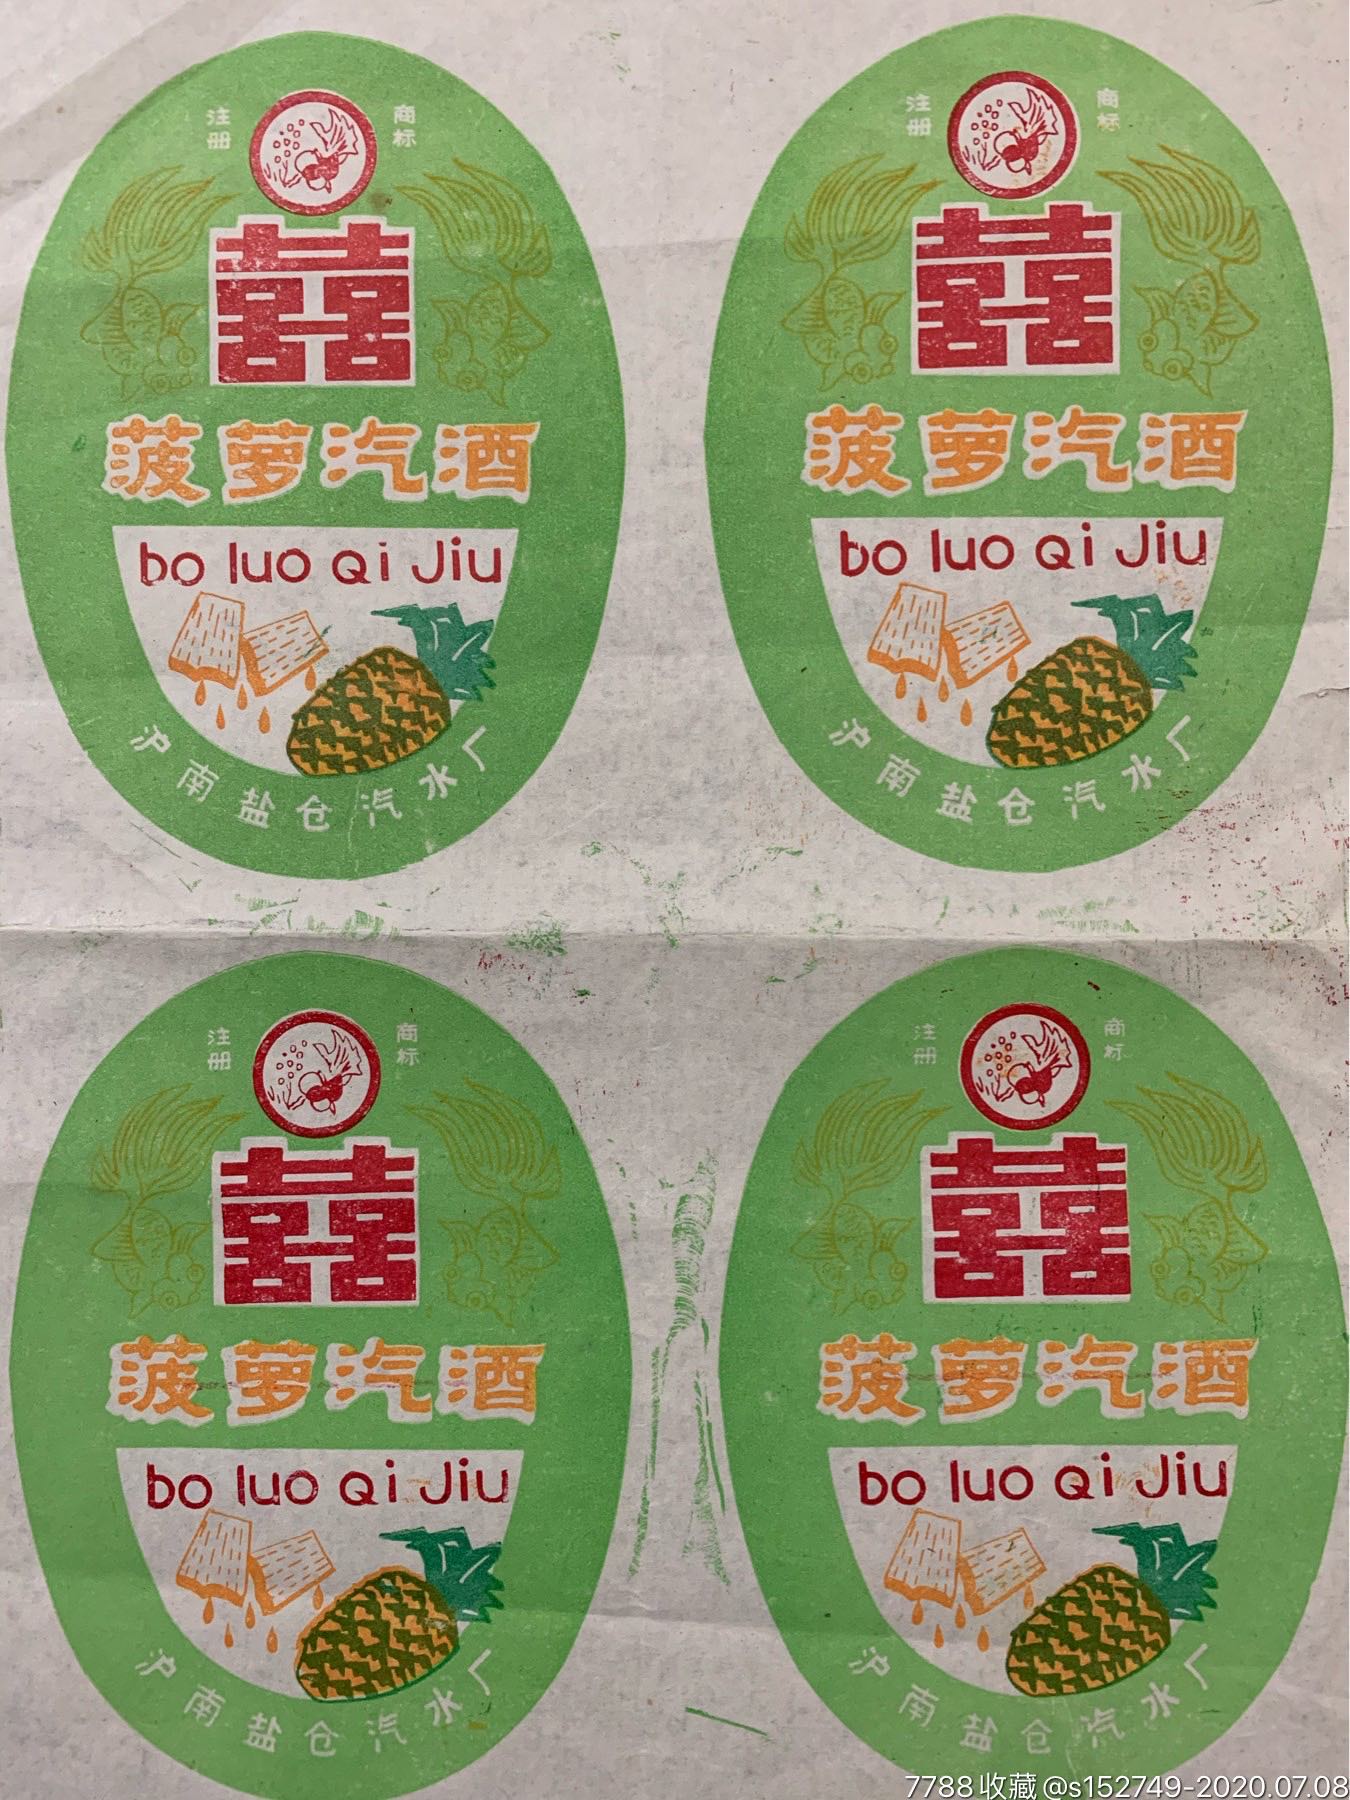 双喜牌菠萝汽水四联广告